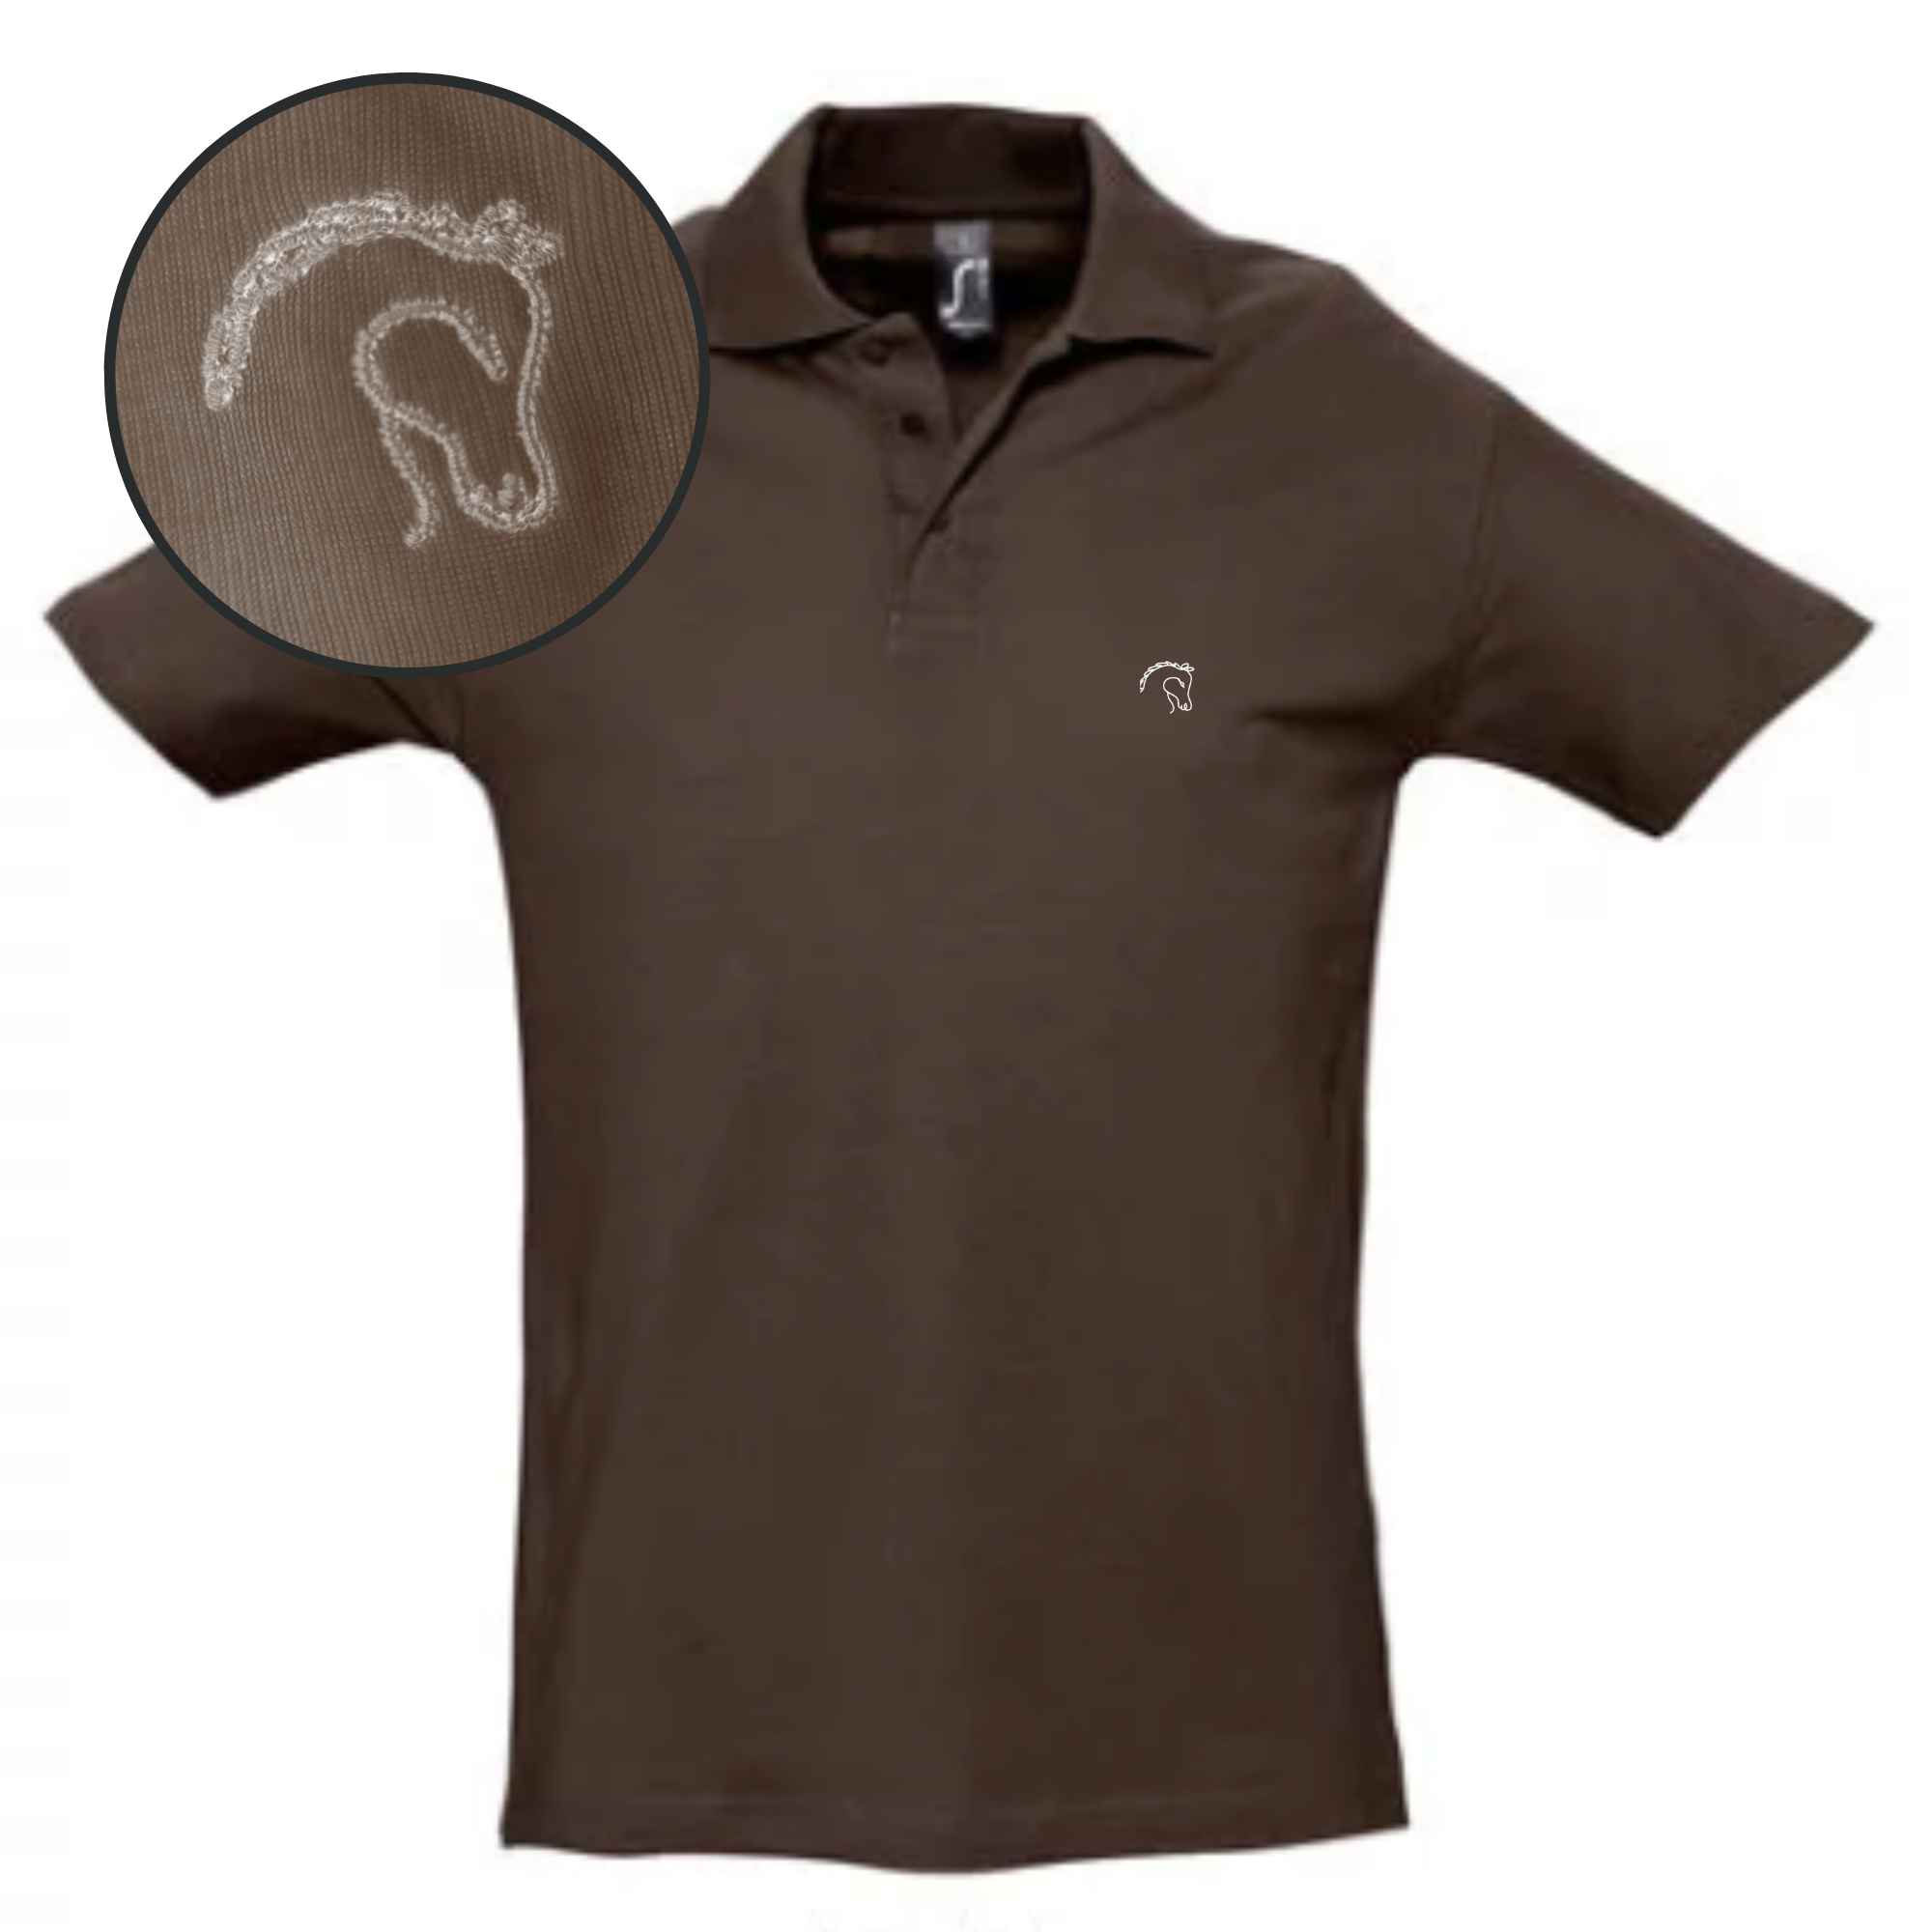 Pferdekopfmotiv auf Poloshirt in der Farbe brau mit dem Stick auf der linken Brust für Pferdebegeisterte